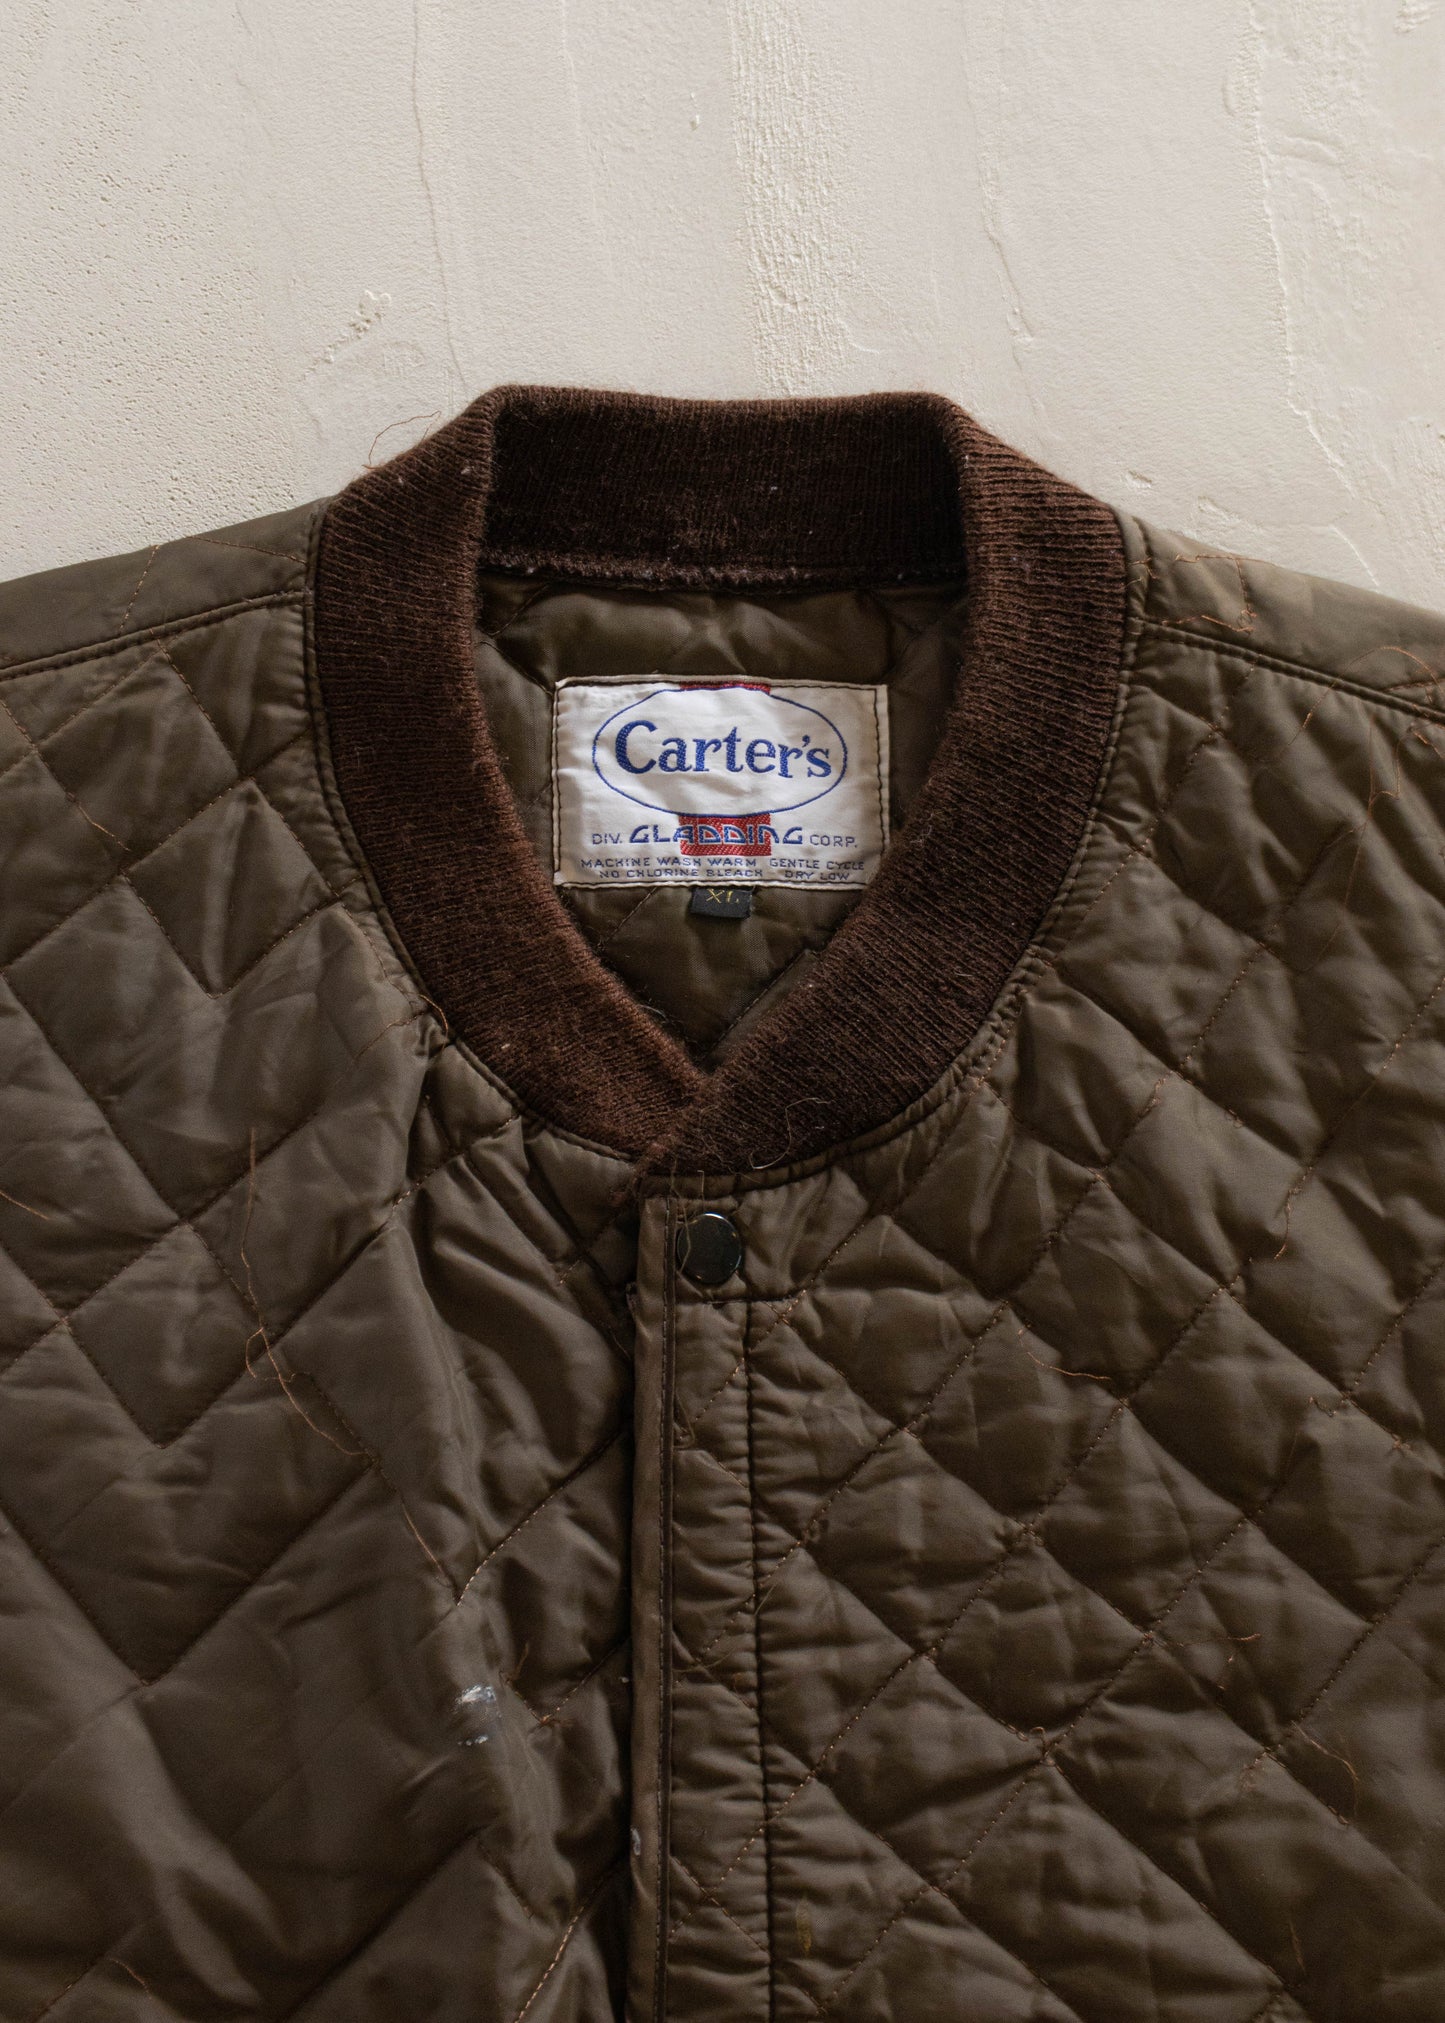 1970s Carter's Nylon Vest Size M/L